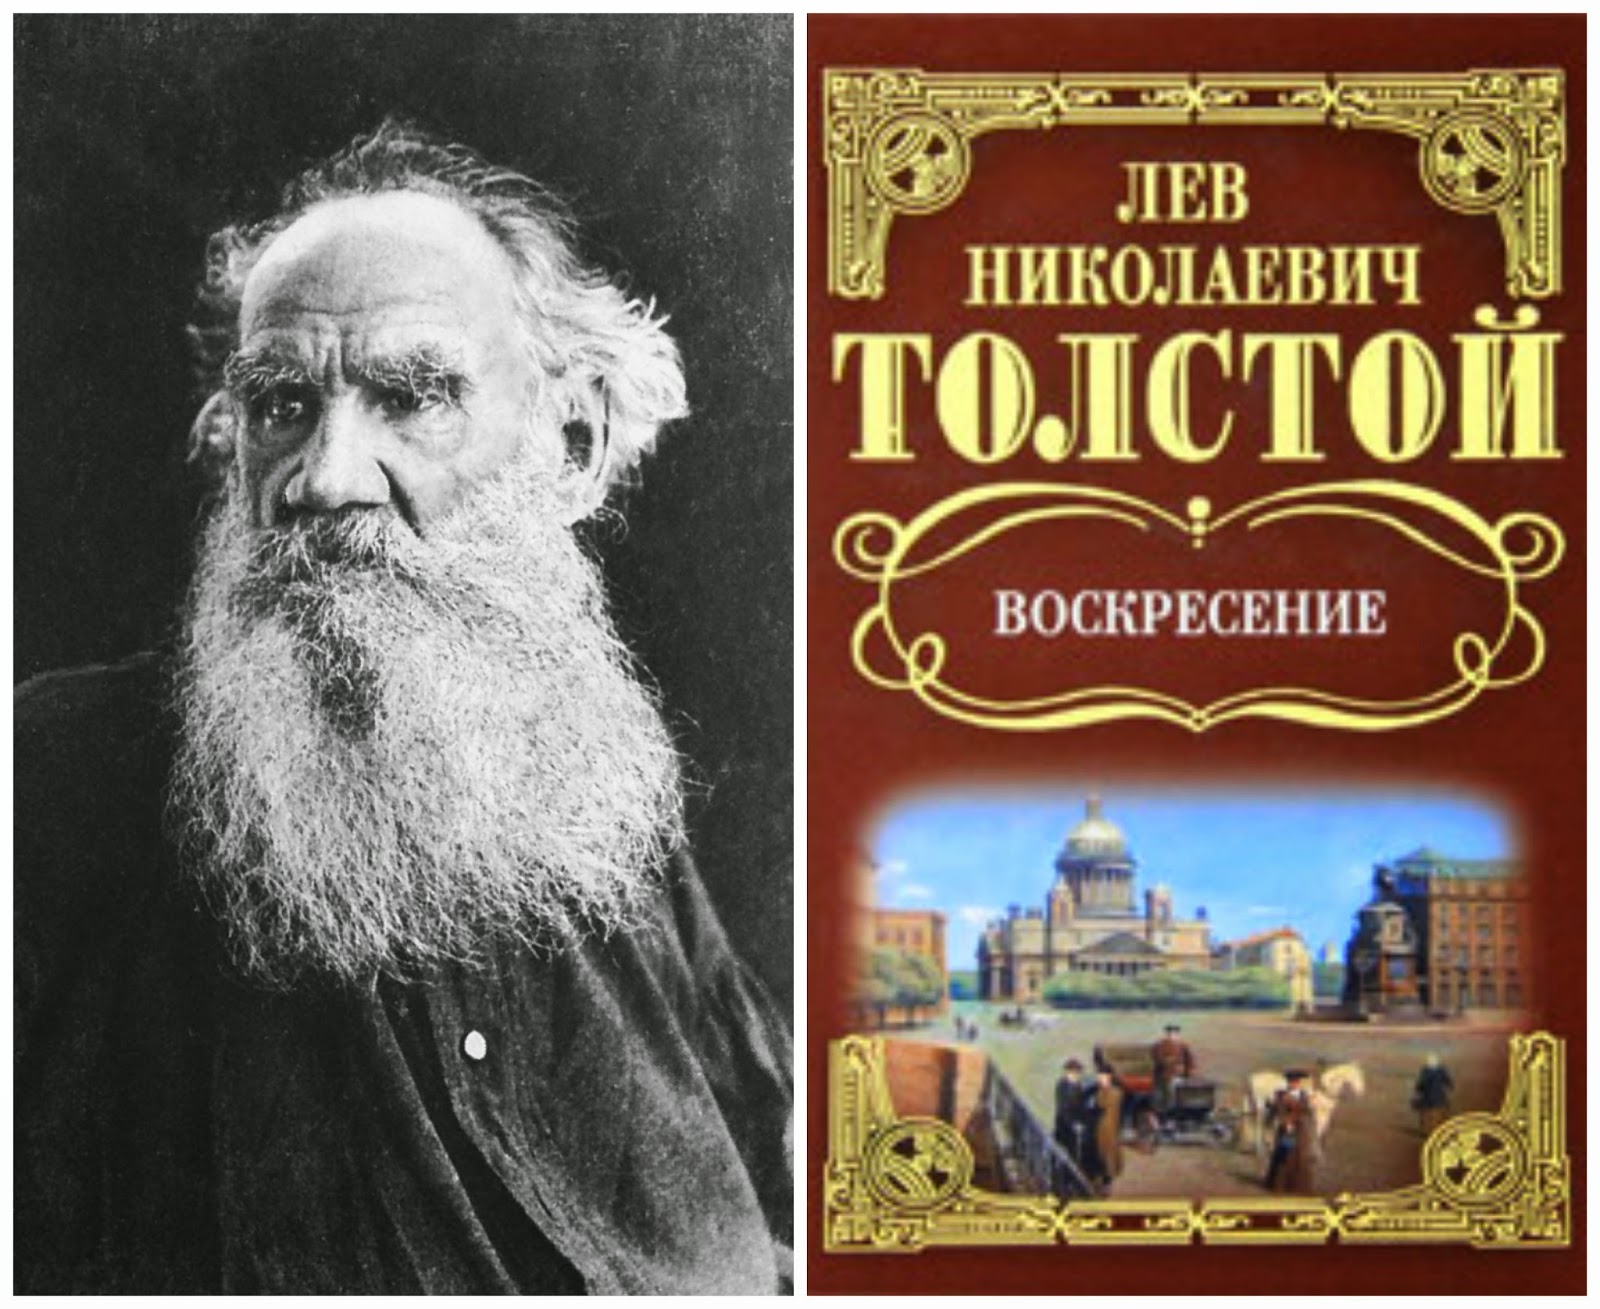 Булька Лев Толстой Картинки